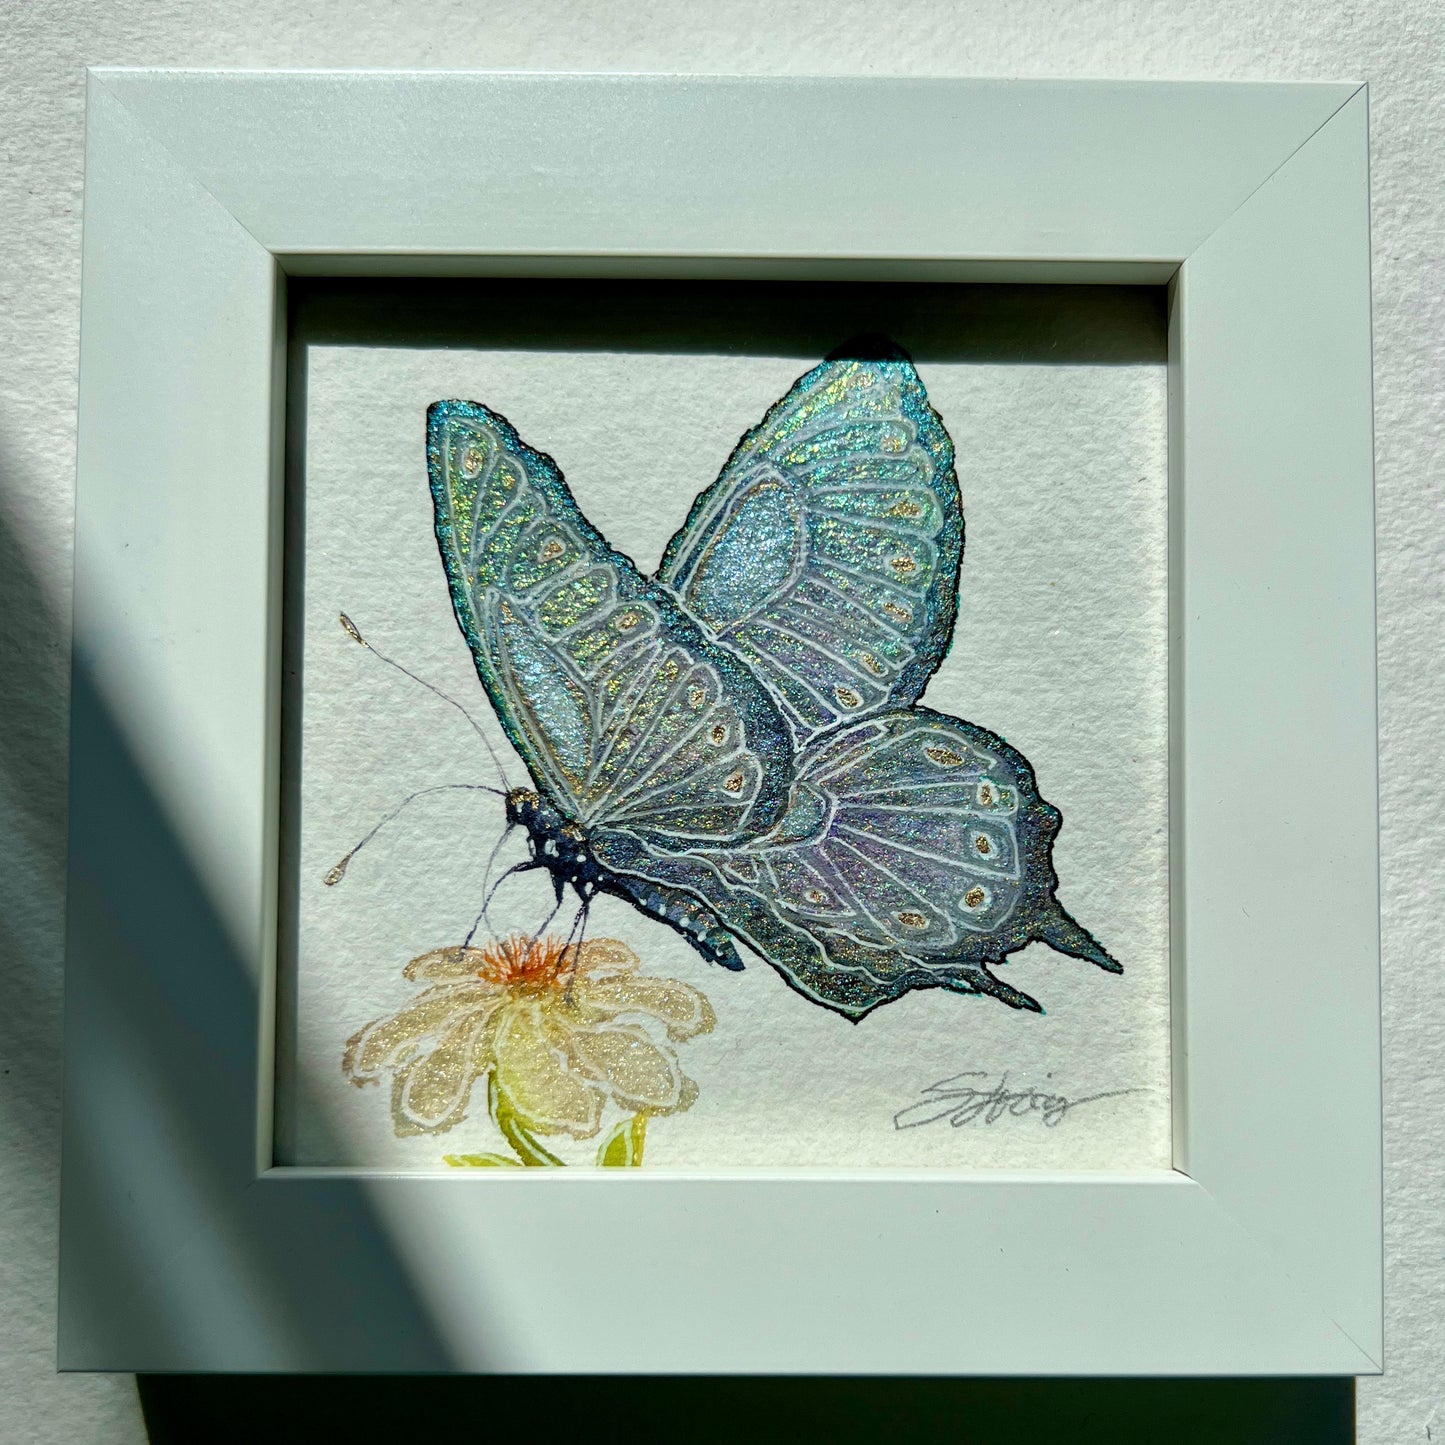 Miniature Framed Butterflies - 4"x4"